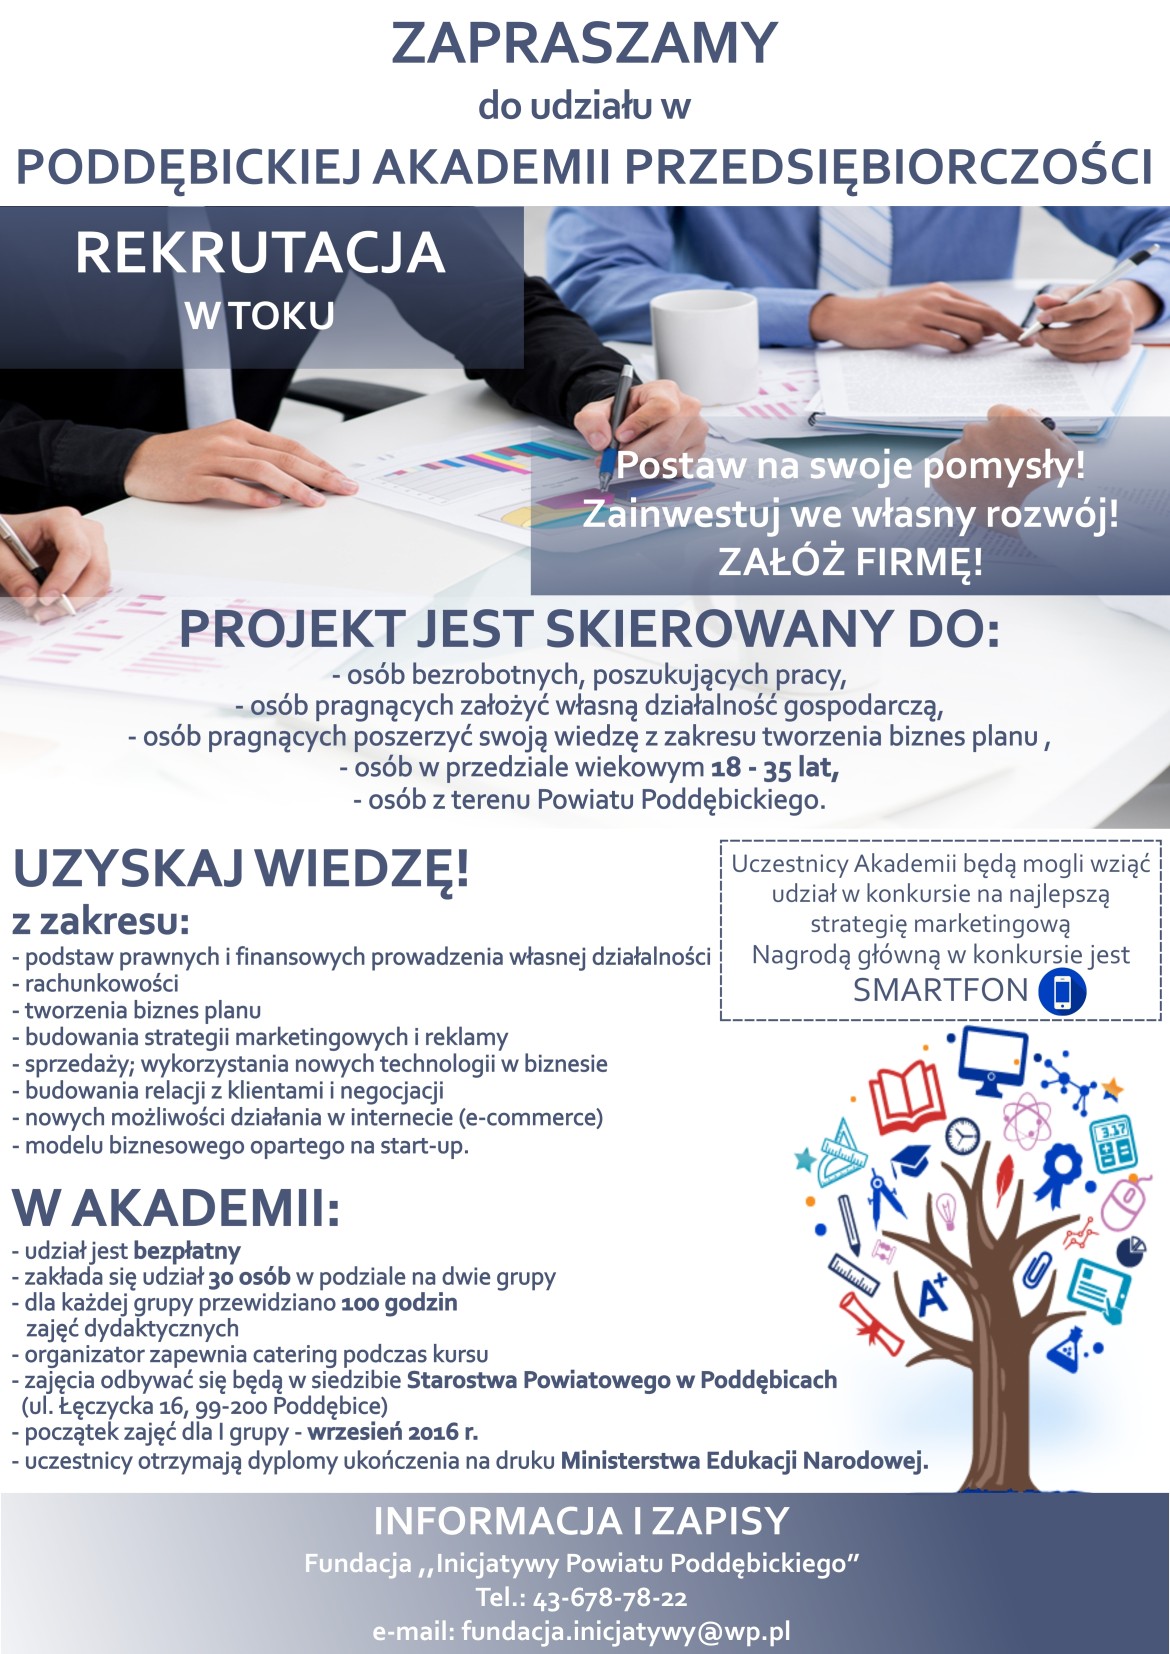 Plakat promujący projekt "Poddebicka Akademia Przedsiębiorczości"